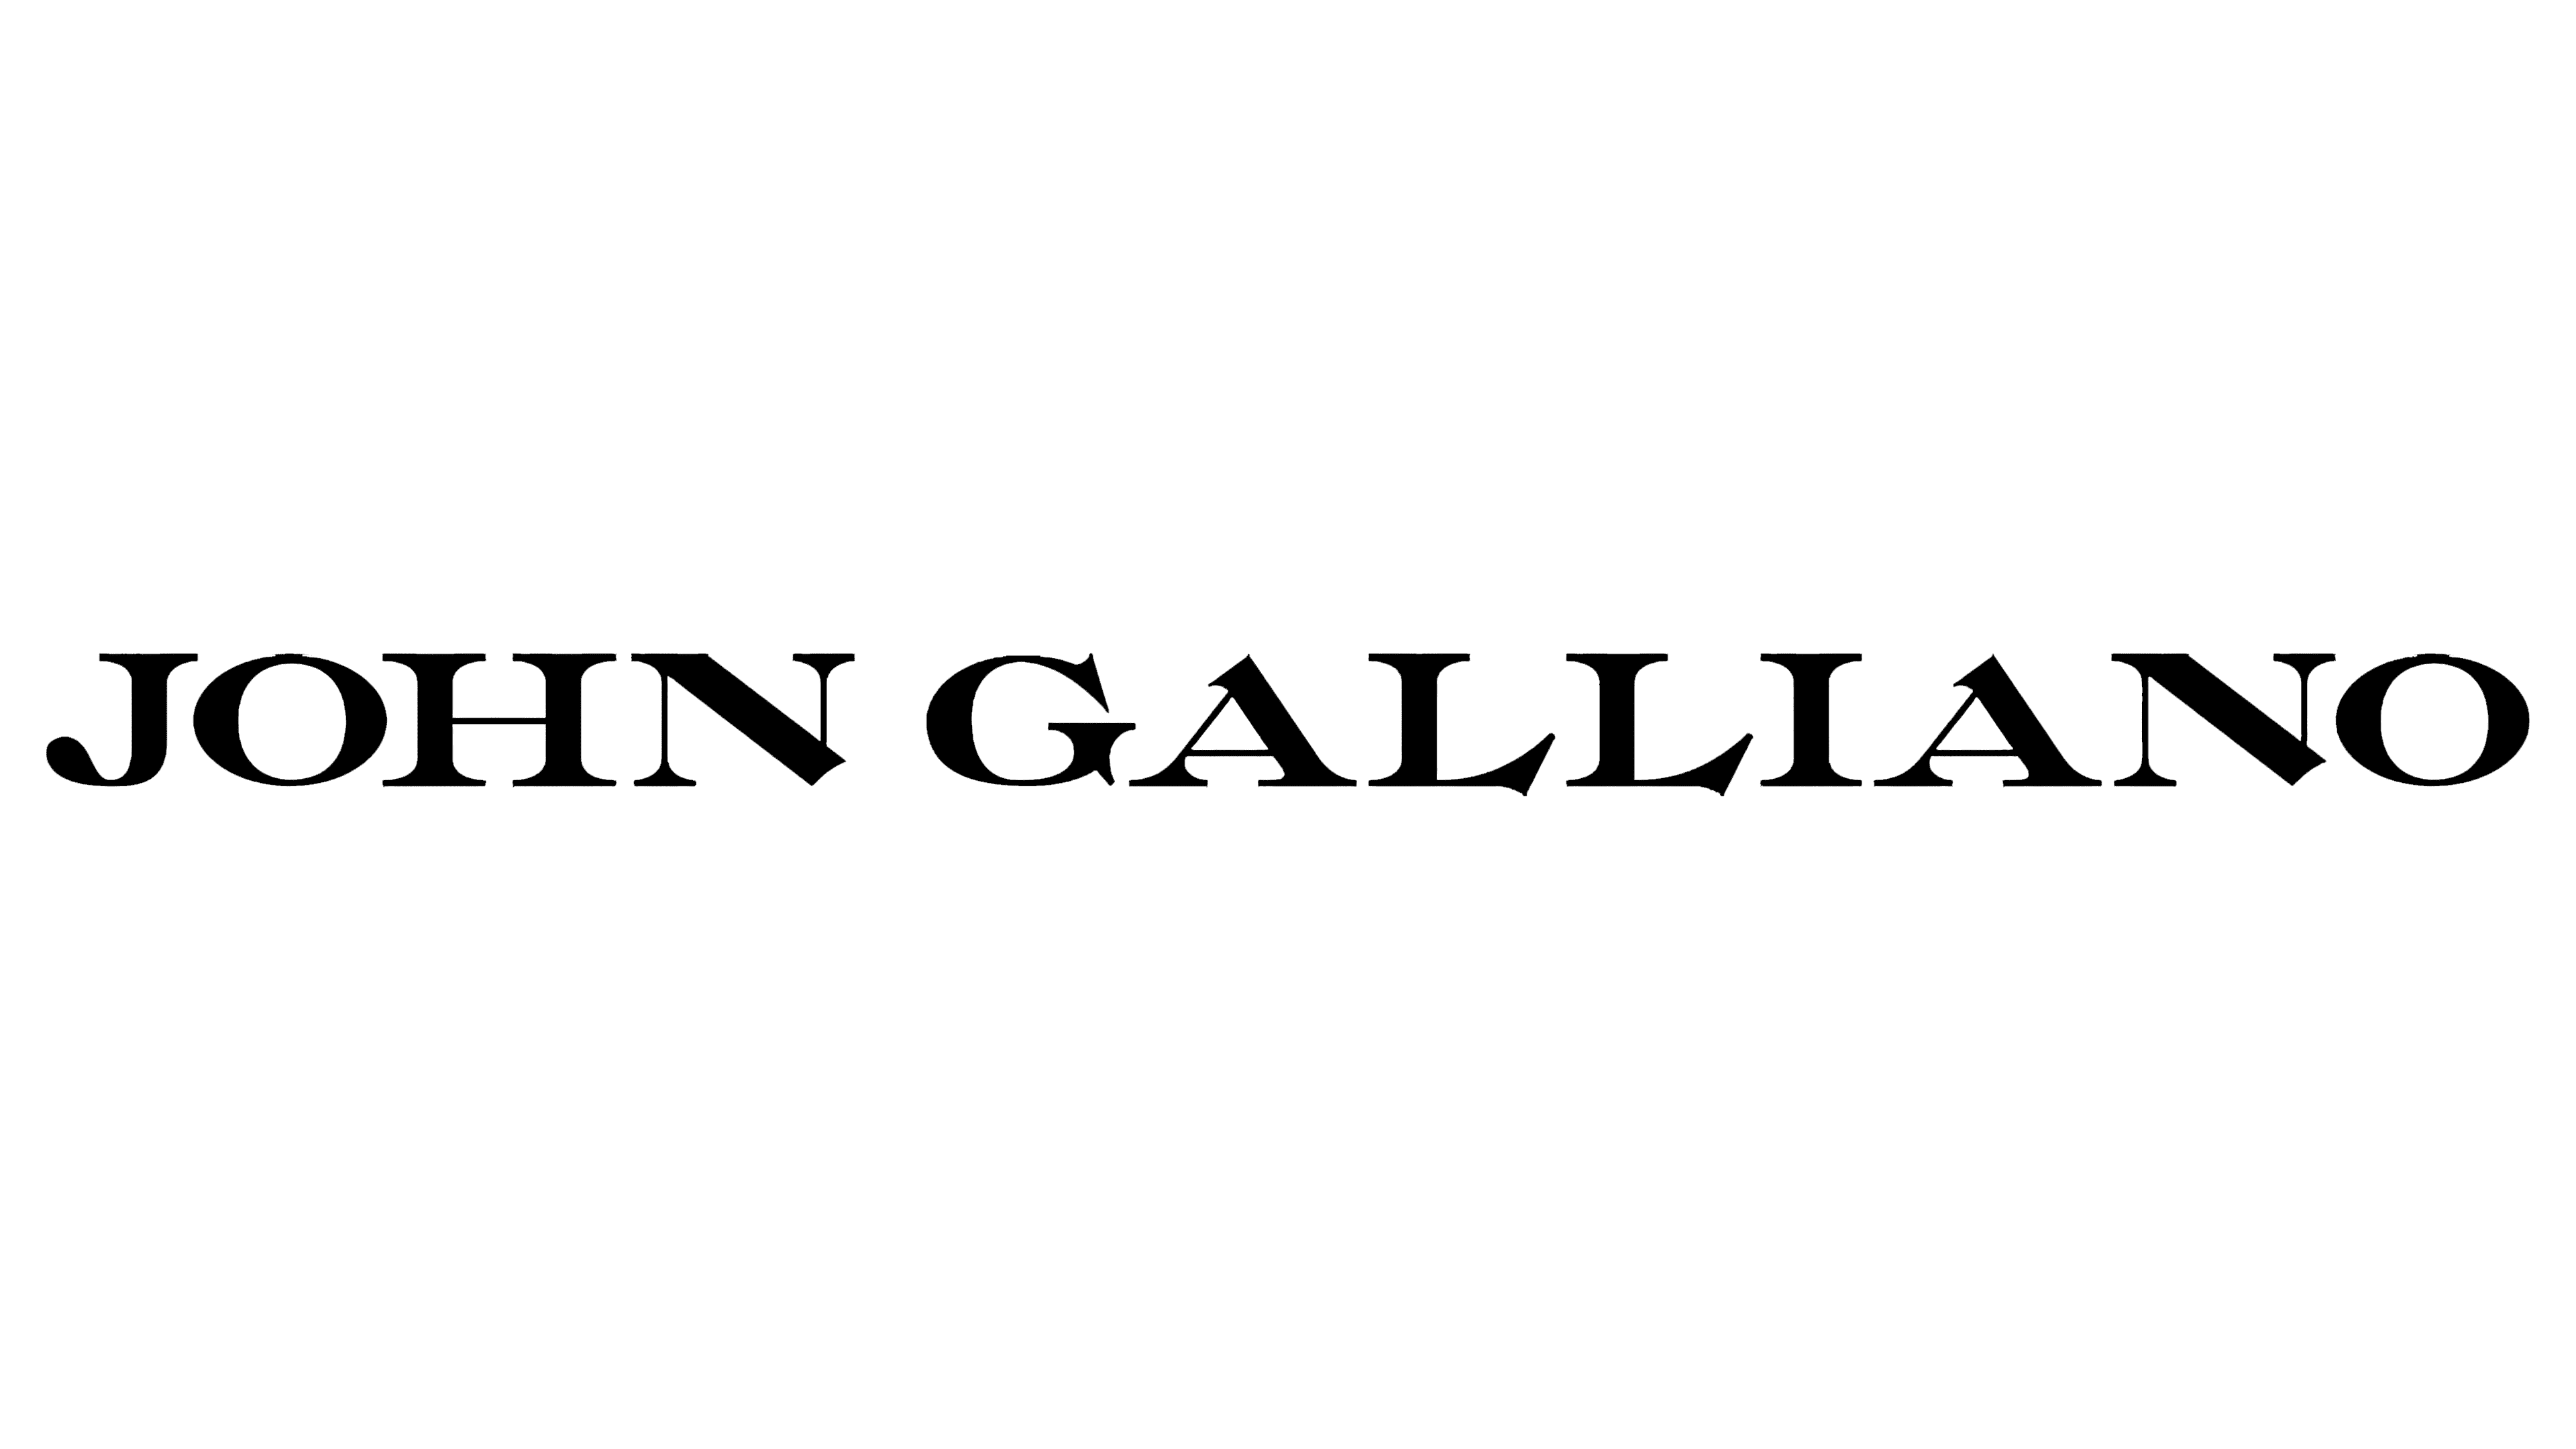 John Galliano Logo